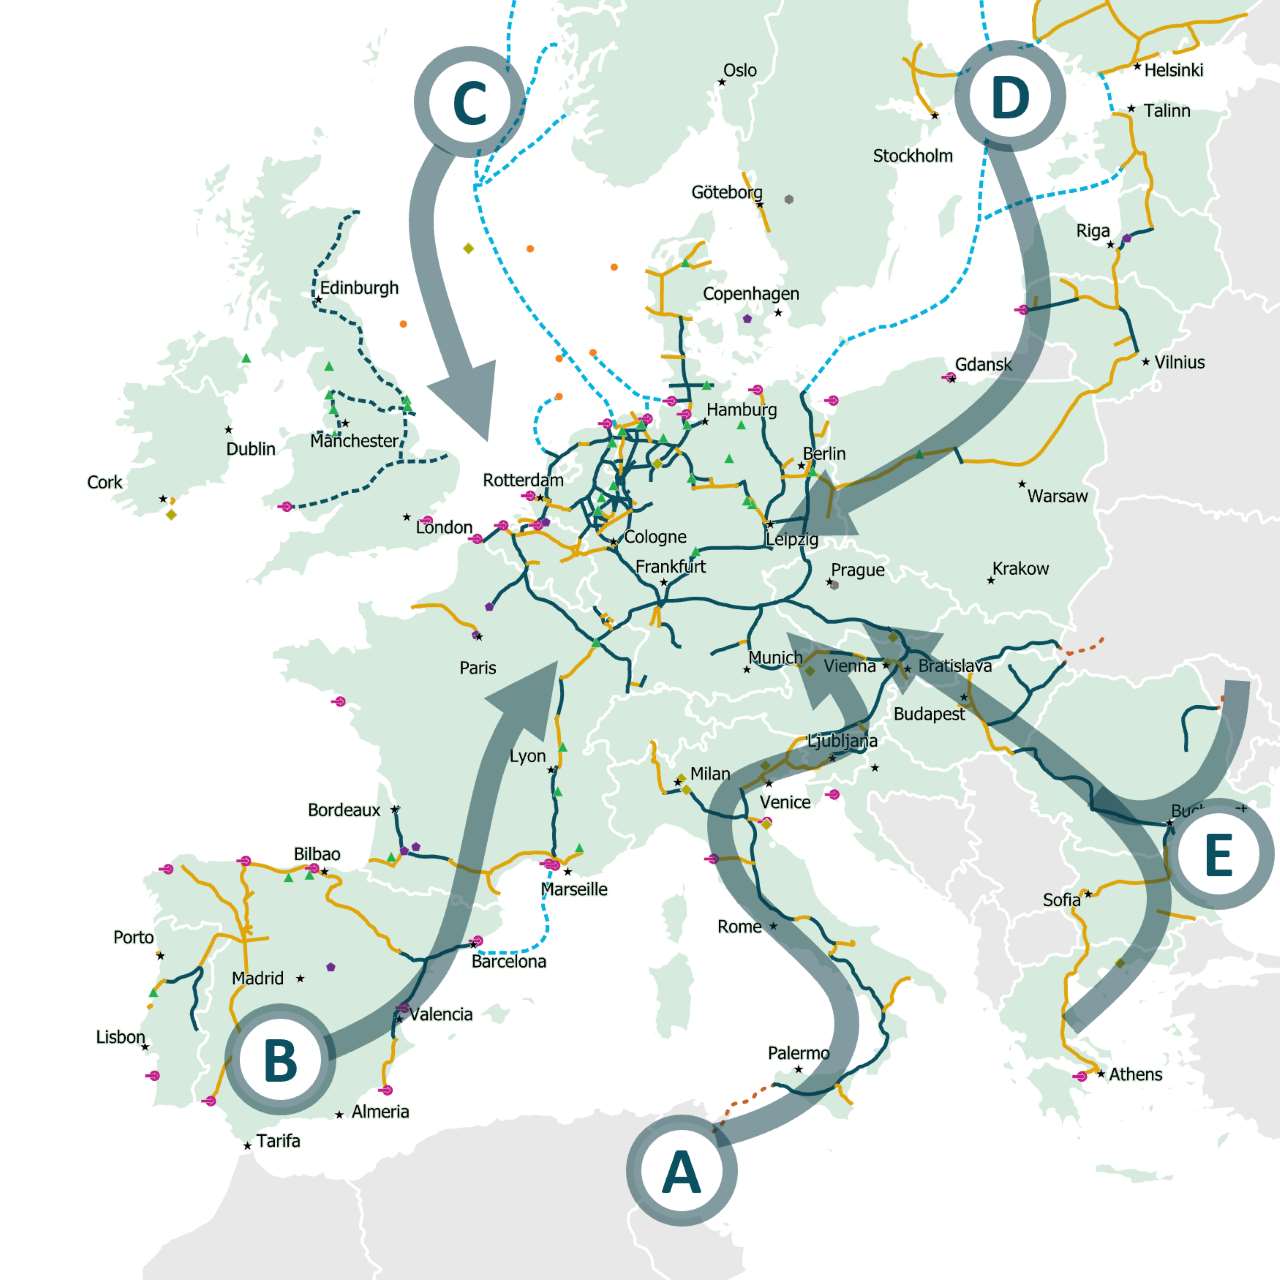 Xương sống hydro châu Âu đến năm 2030. Ảnh: ehb.eu